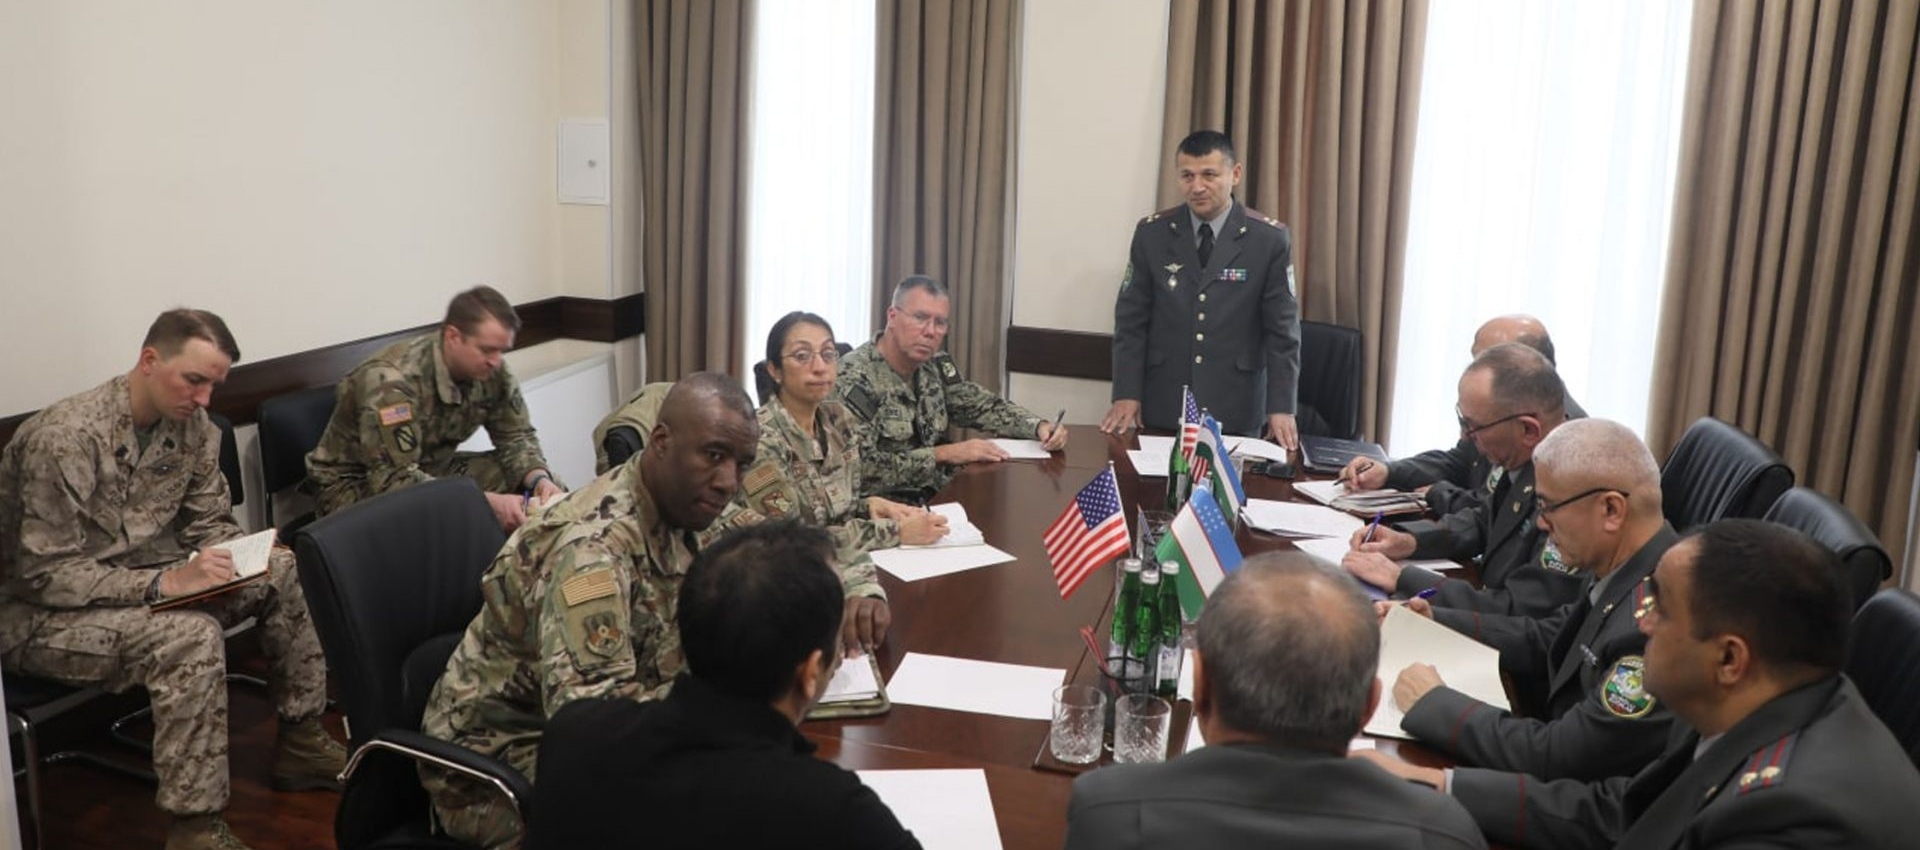 Военная делегация медиков США в Ташкентском Центральном военном клиническом госпитале